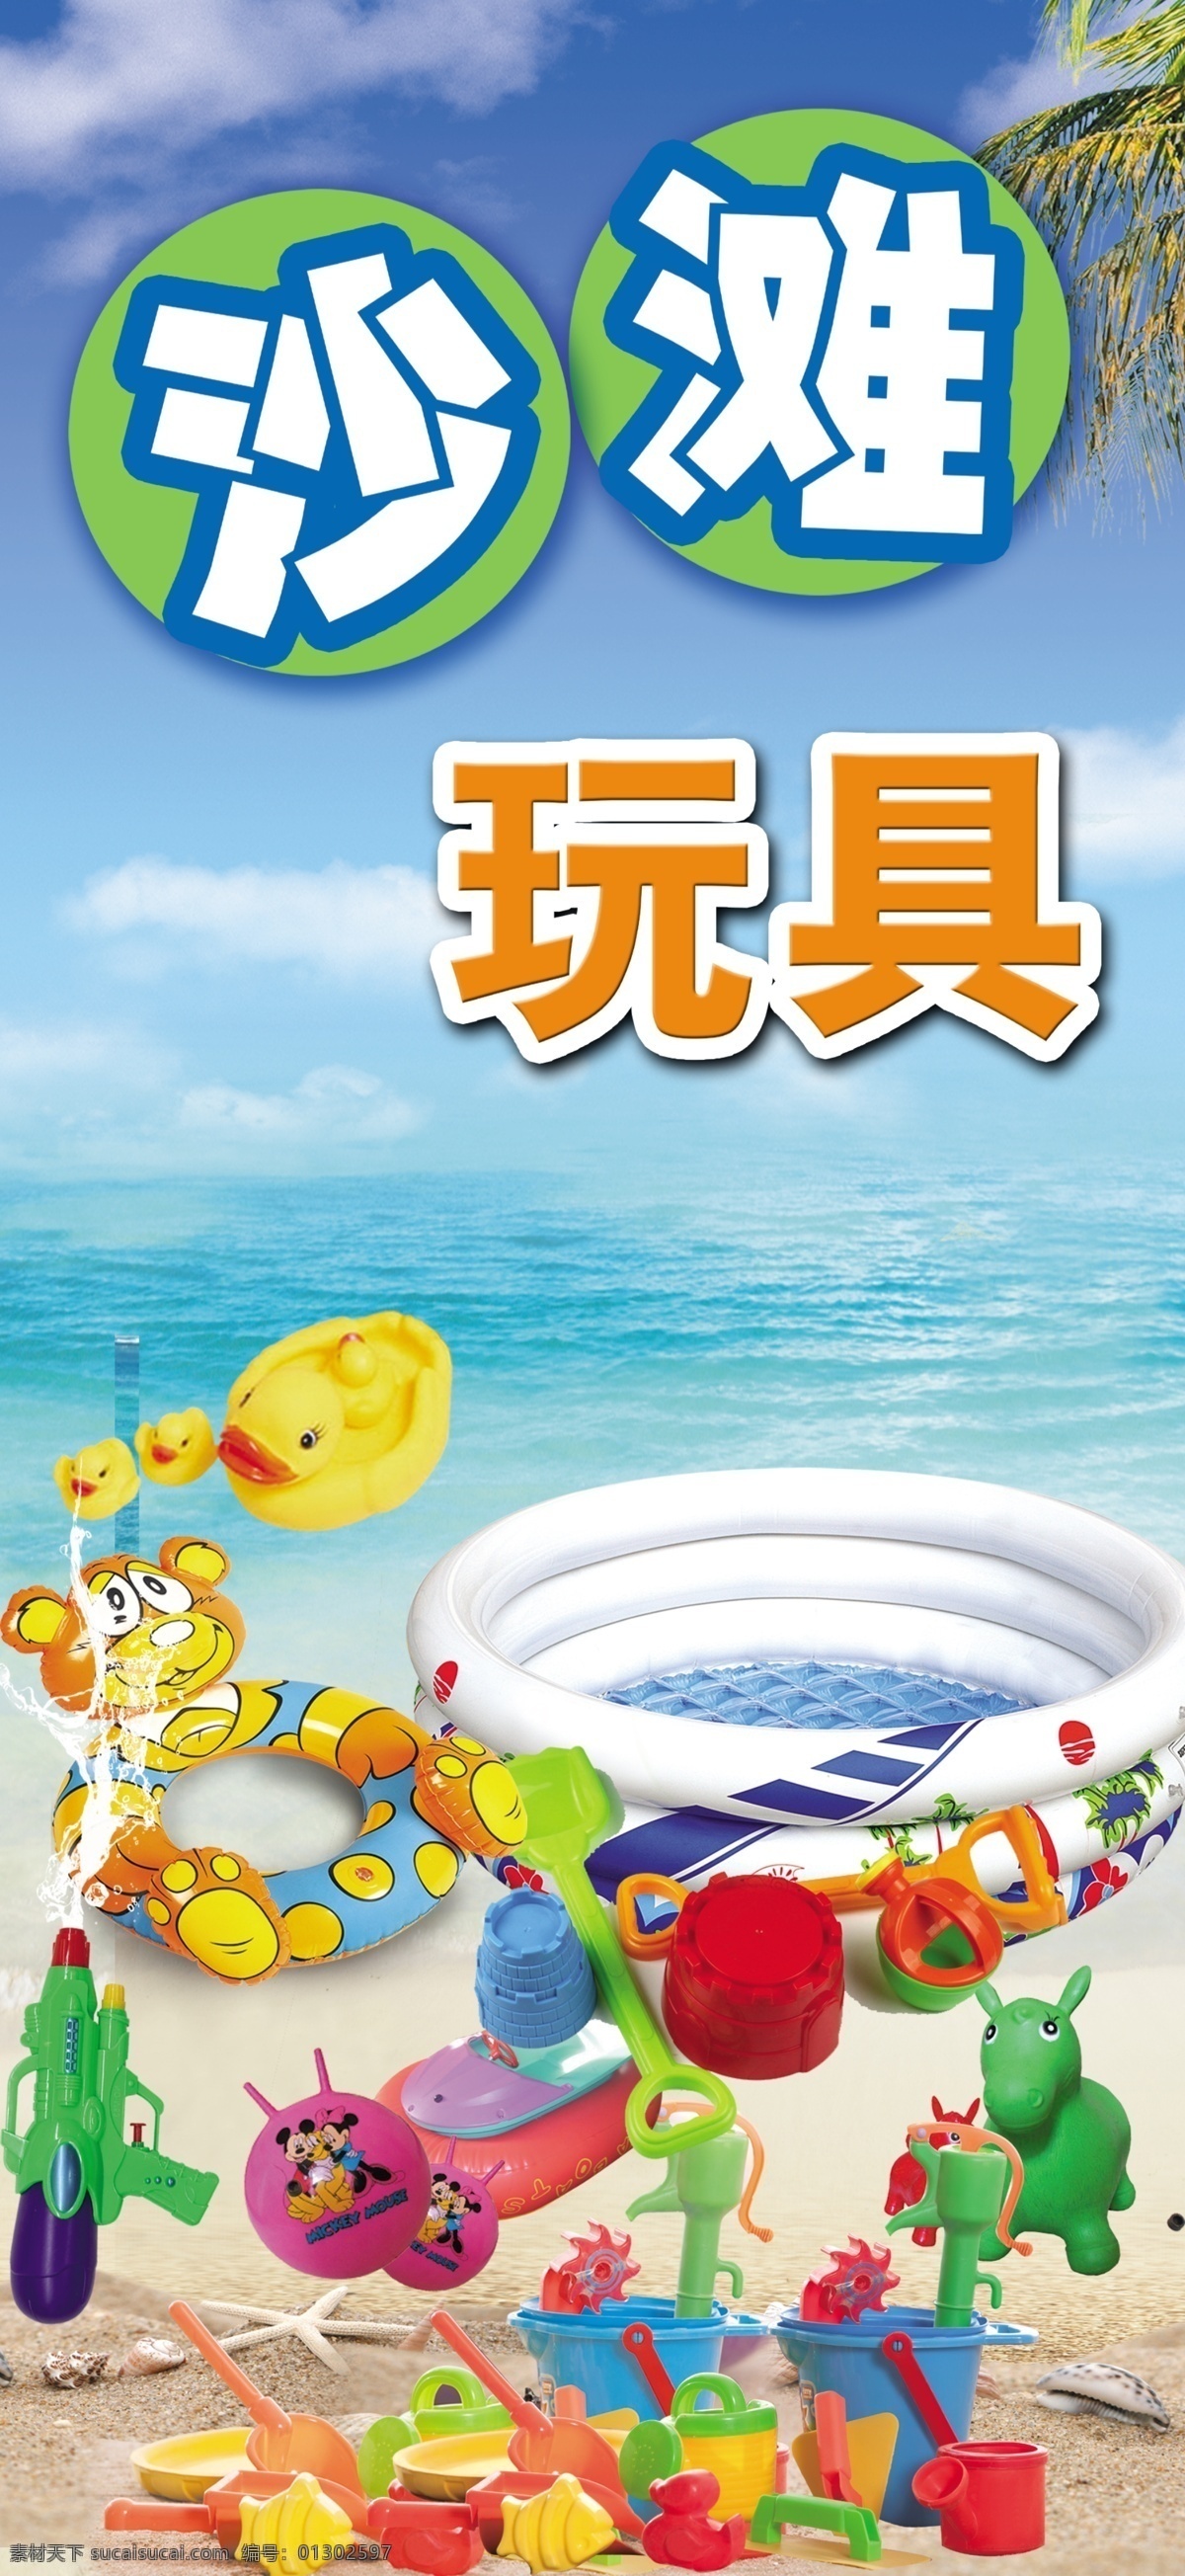 沙滩玩具图片 沙滩玩具 大海蓝天 塑料玩具 儿童儿童 充气泳池